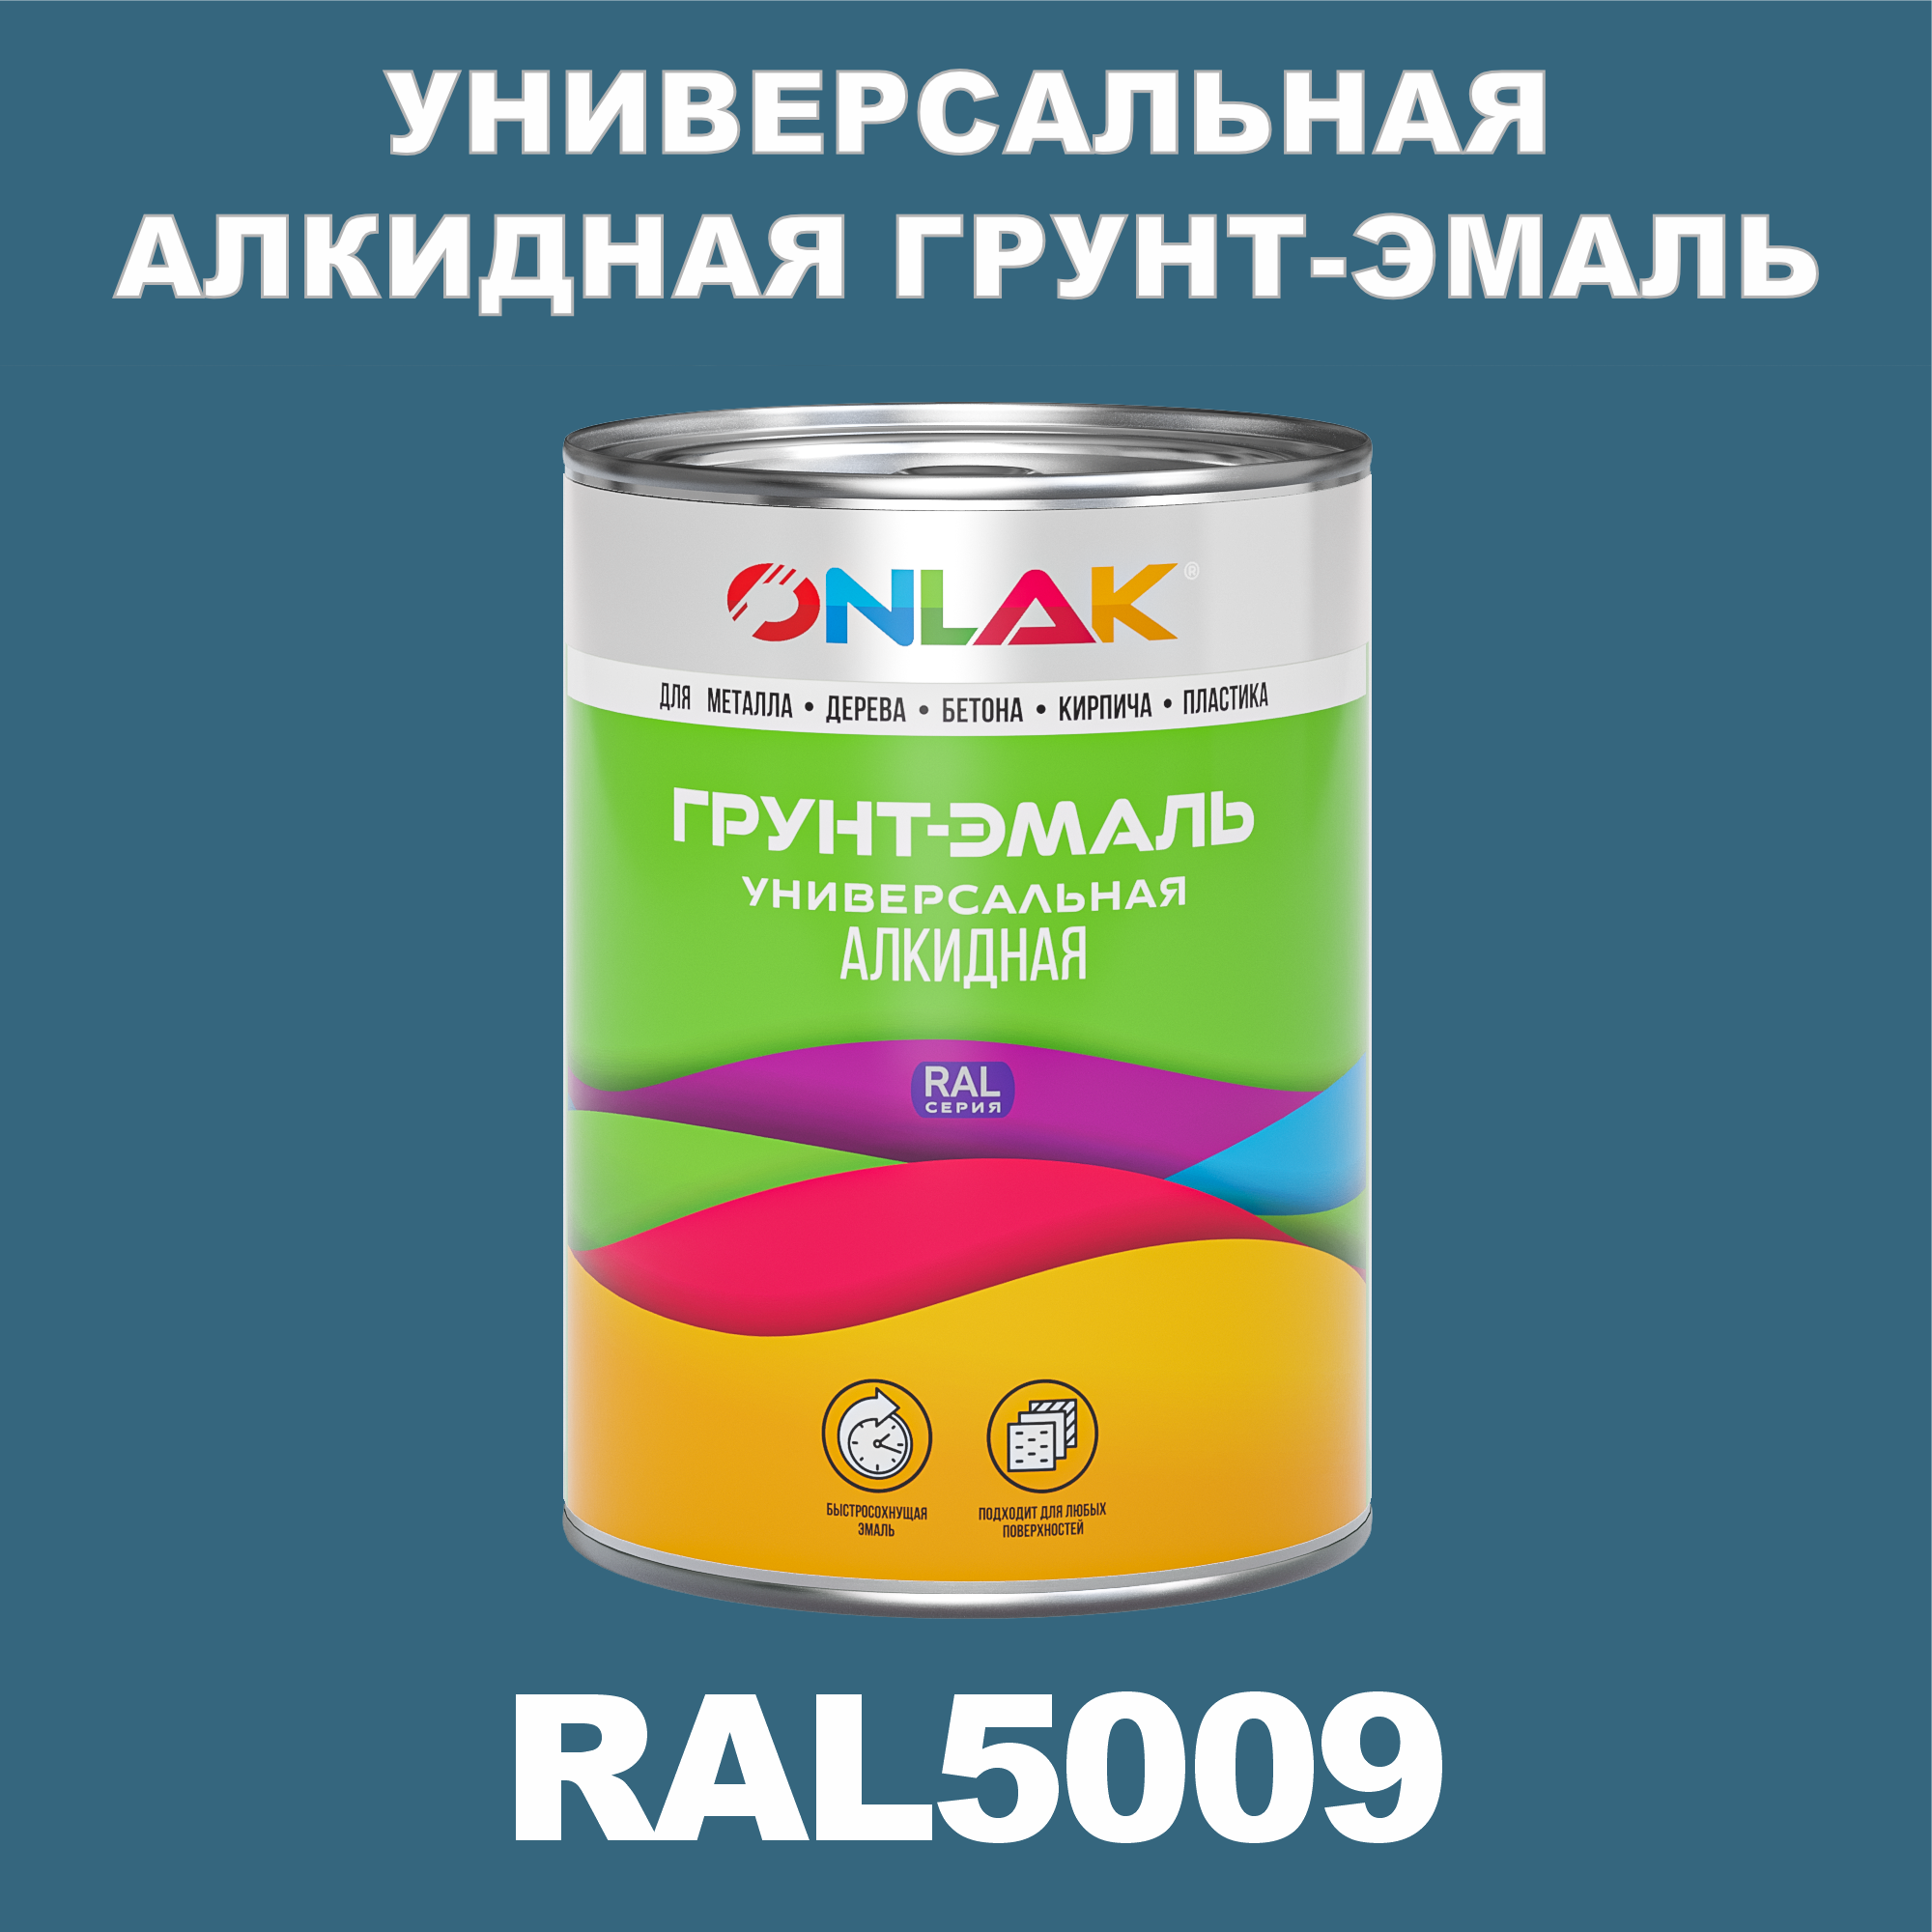 Грунт-эмаль ONLAK 1К RAL5009 антикоррозионная алкидная по металлу по ржавчине 1 кг грунт эмаль skladno по ржавчине алкидная желтая 1 8 кг